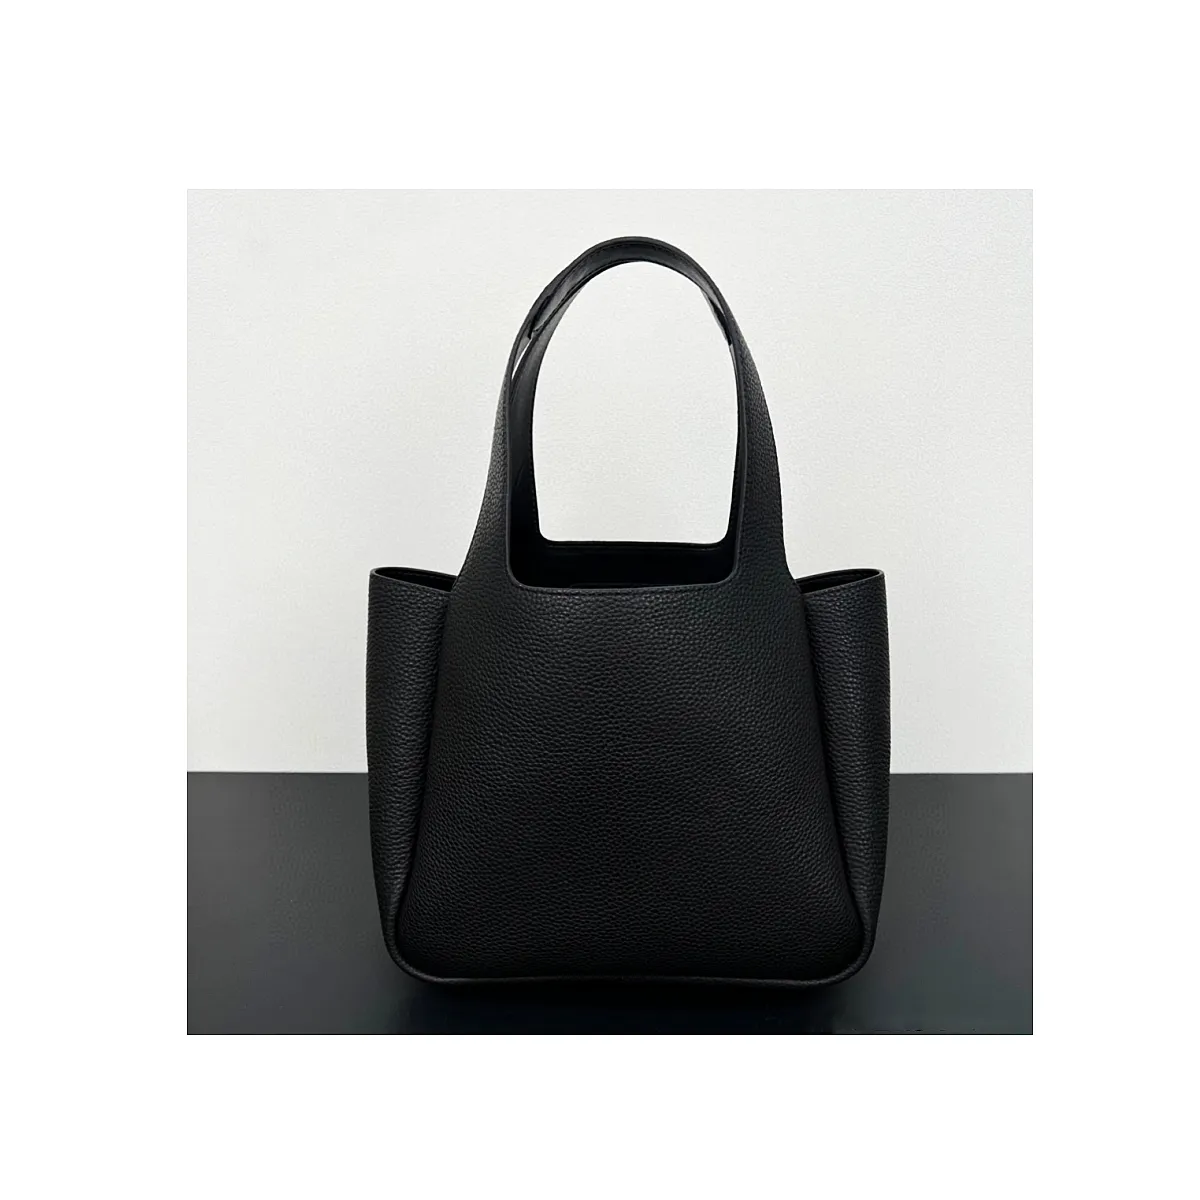 Sacs en cuir en vente célèbre marque élégante créateur de mode dames sacs à main noirs femmes sacs panier personnalisés